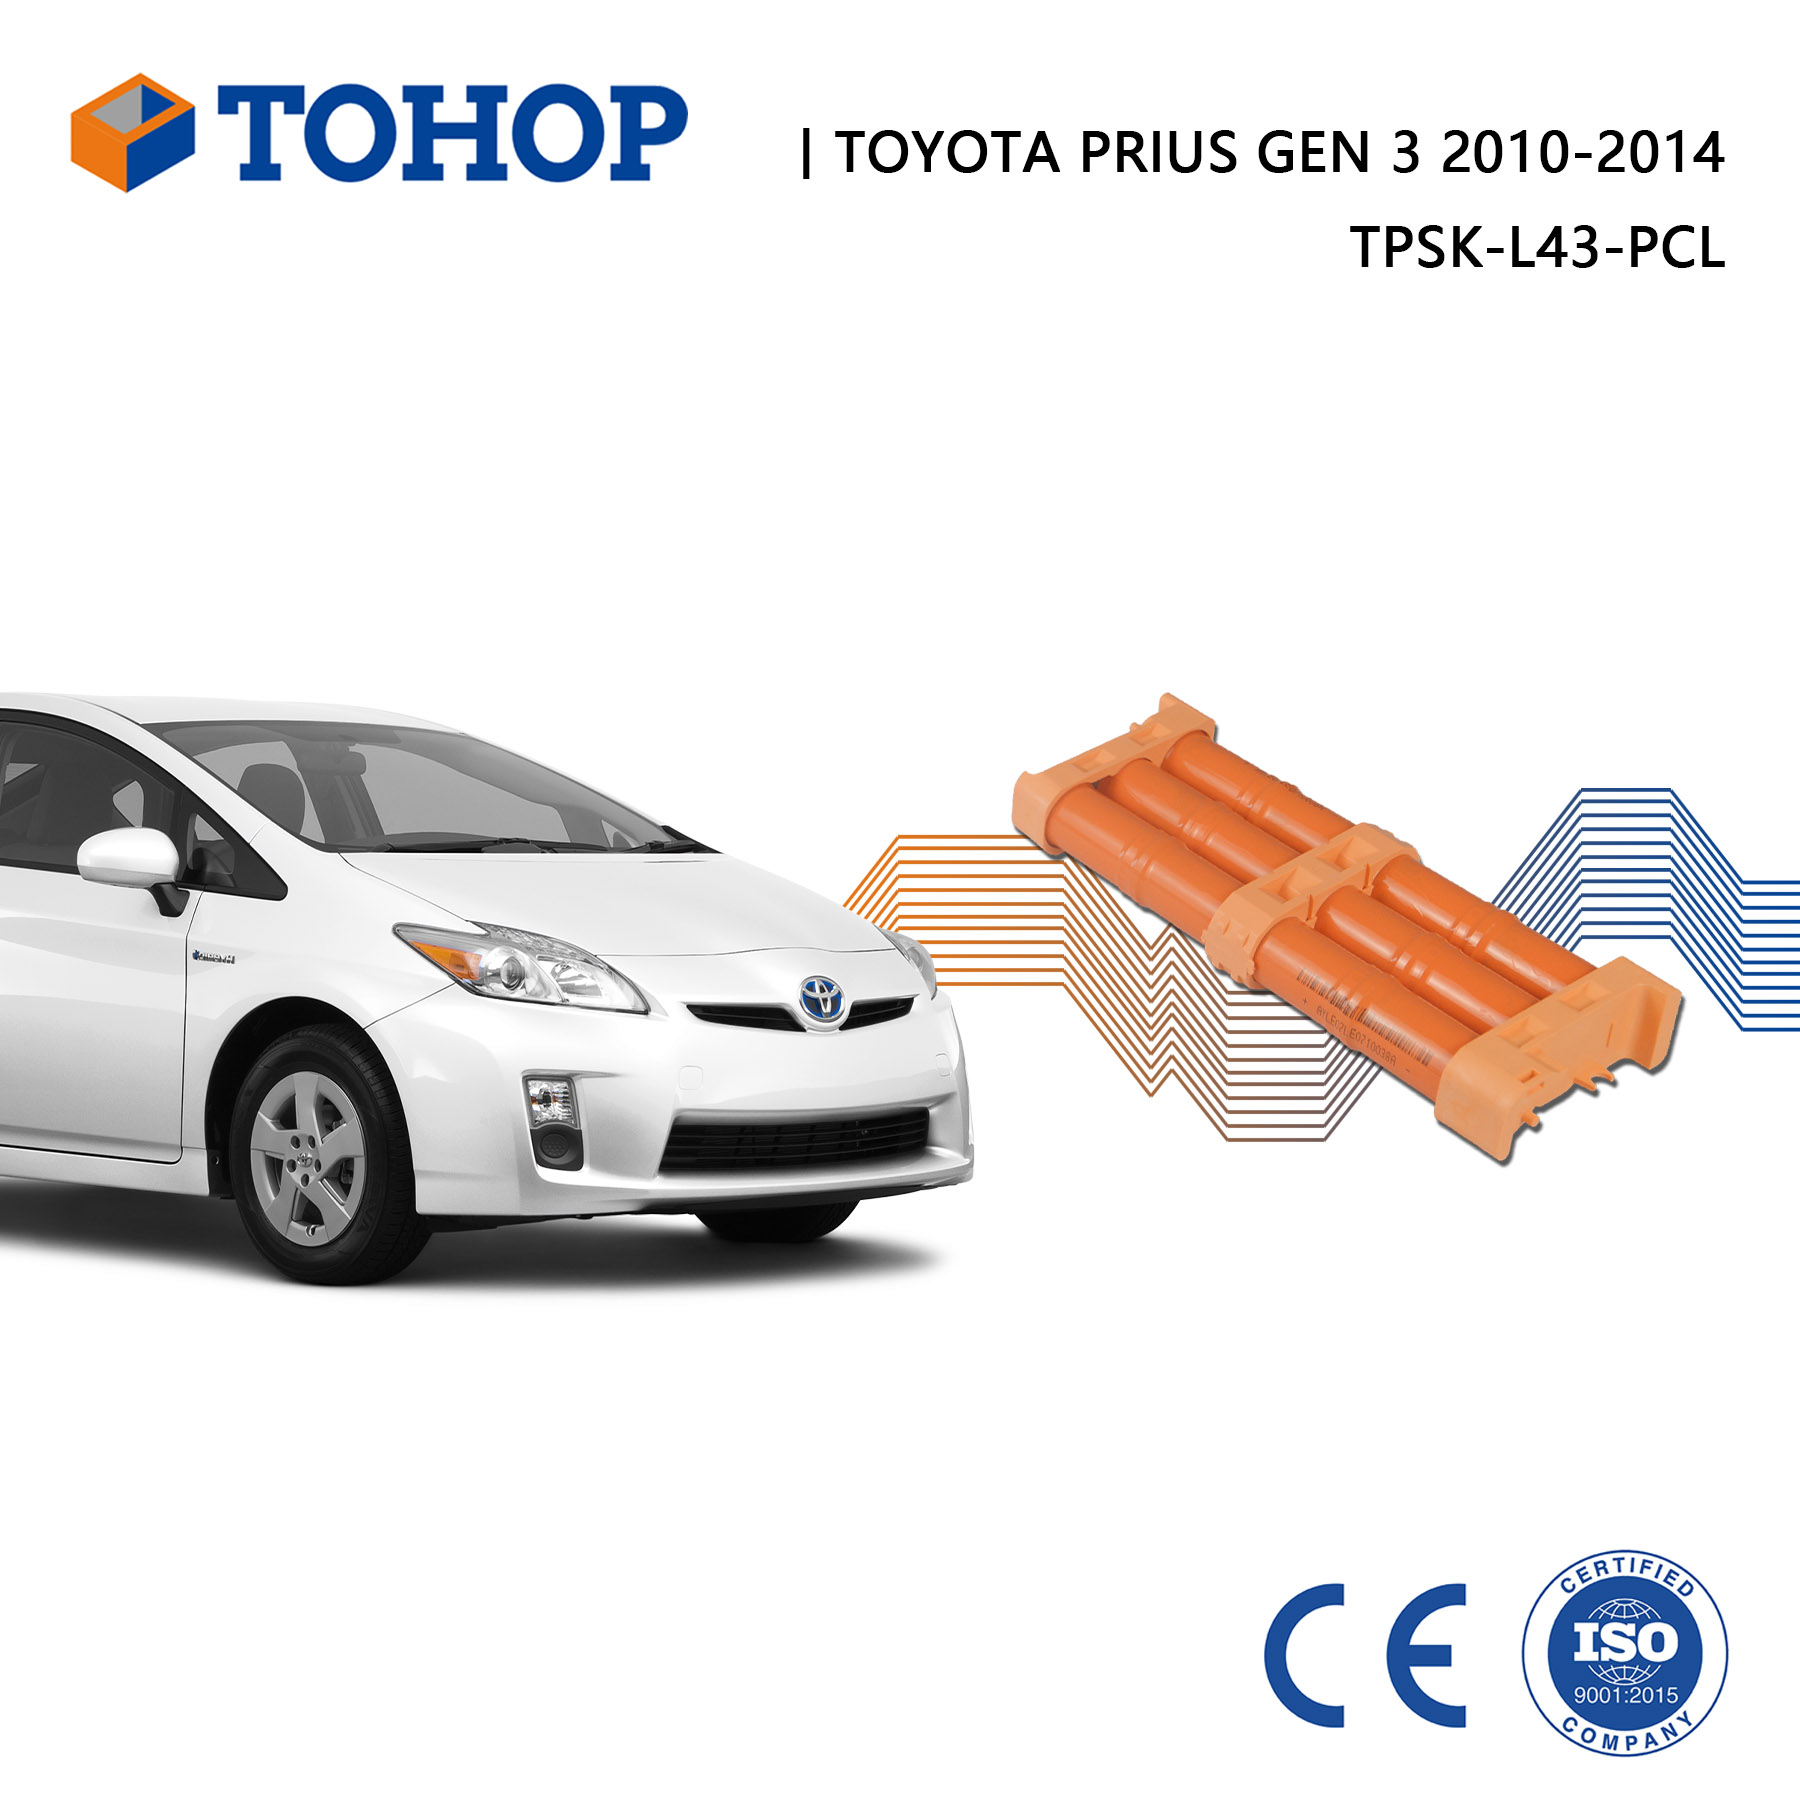 Toyota Prius Gen 2 Hybridbatterie